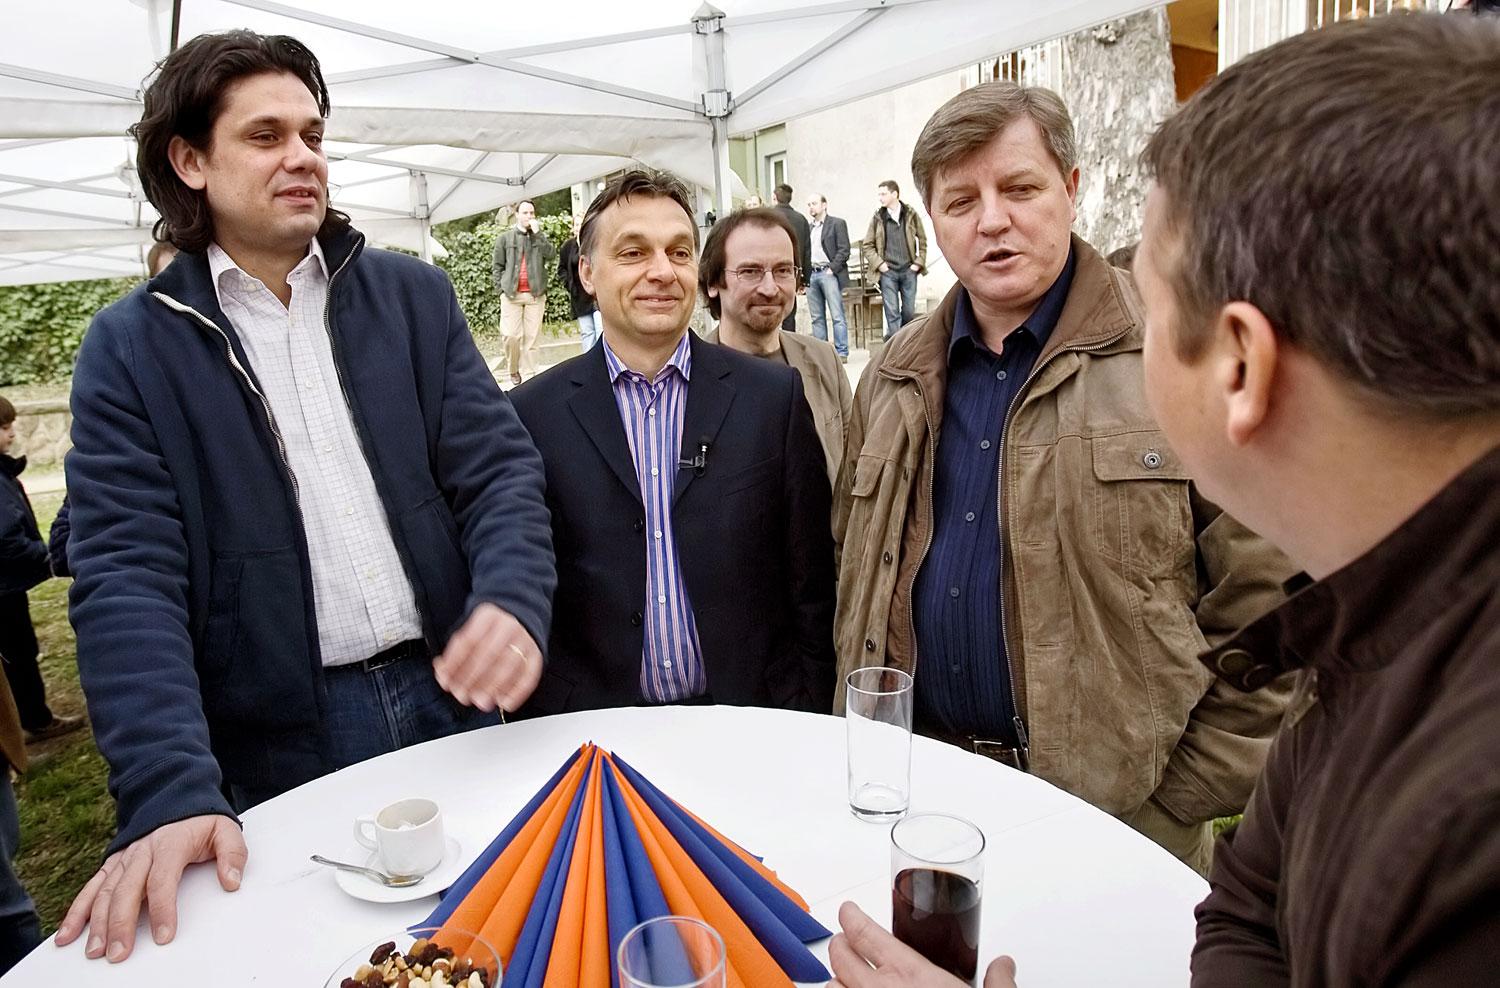 Deutsch, Orbán, Szájer, Stumpf és Bayer Zsolt 2009-ben. Zárt férfiközösség 